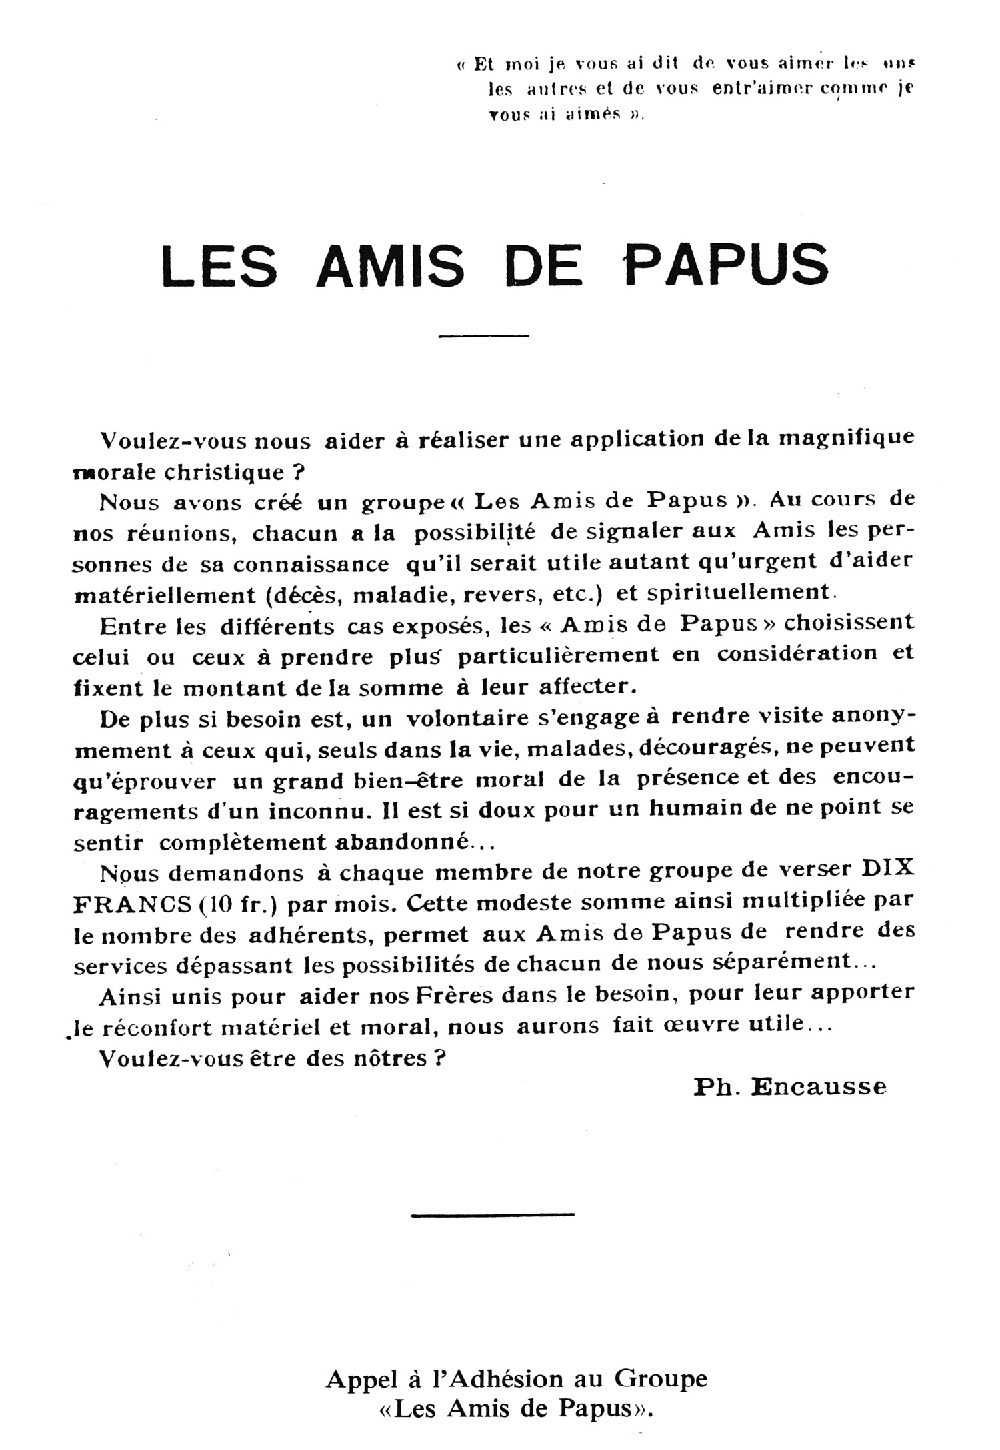 Les Amis de Papus, par Philippe Encausse